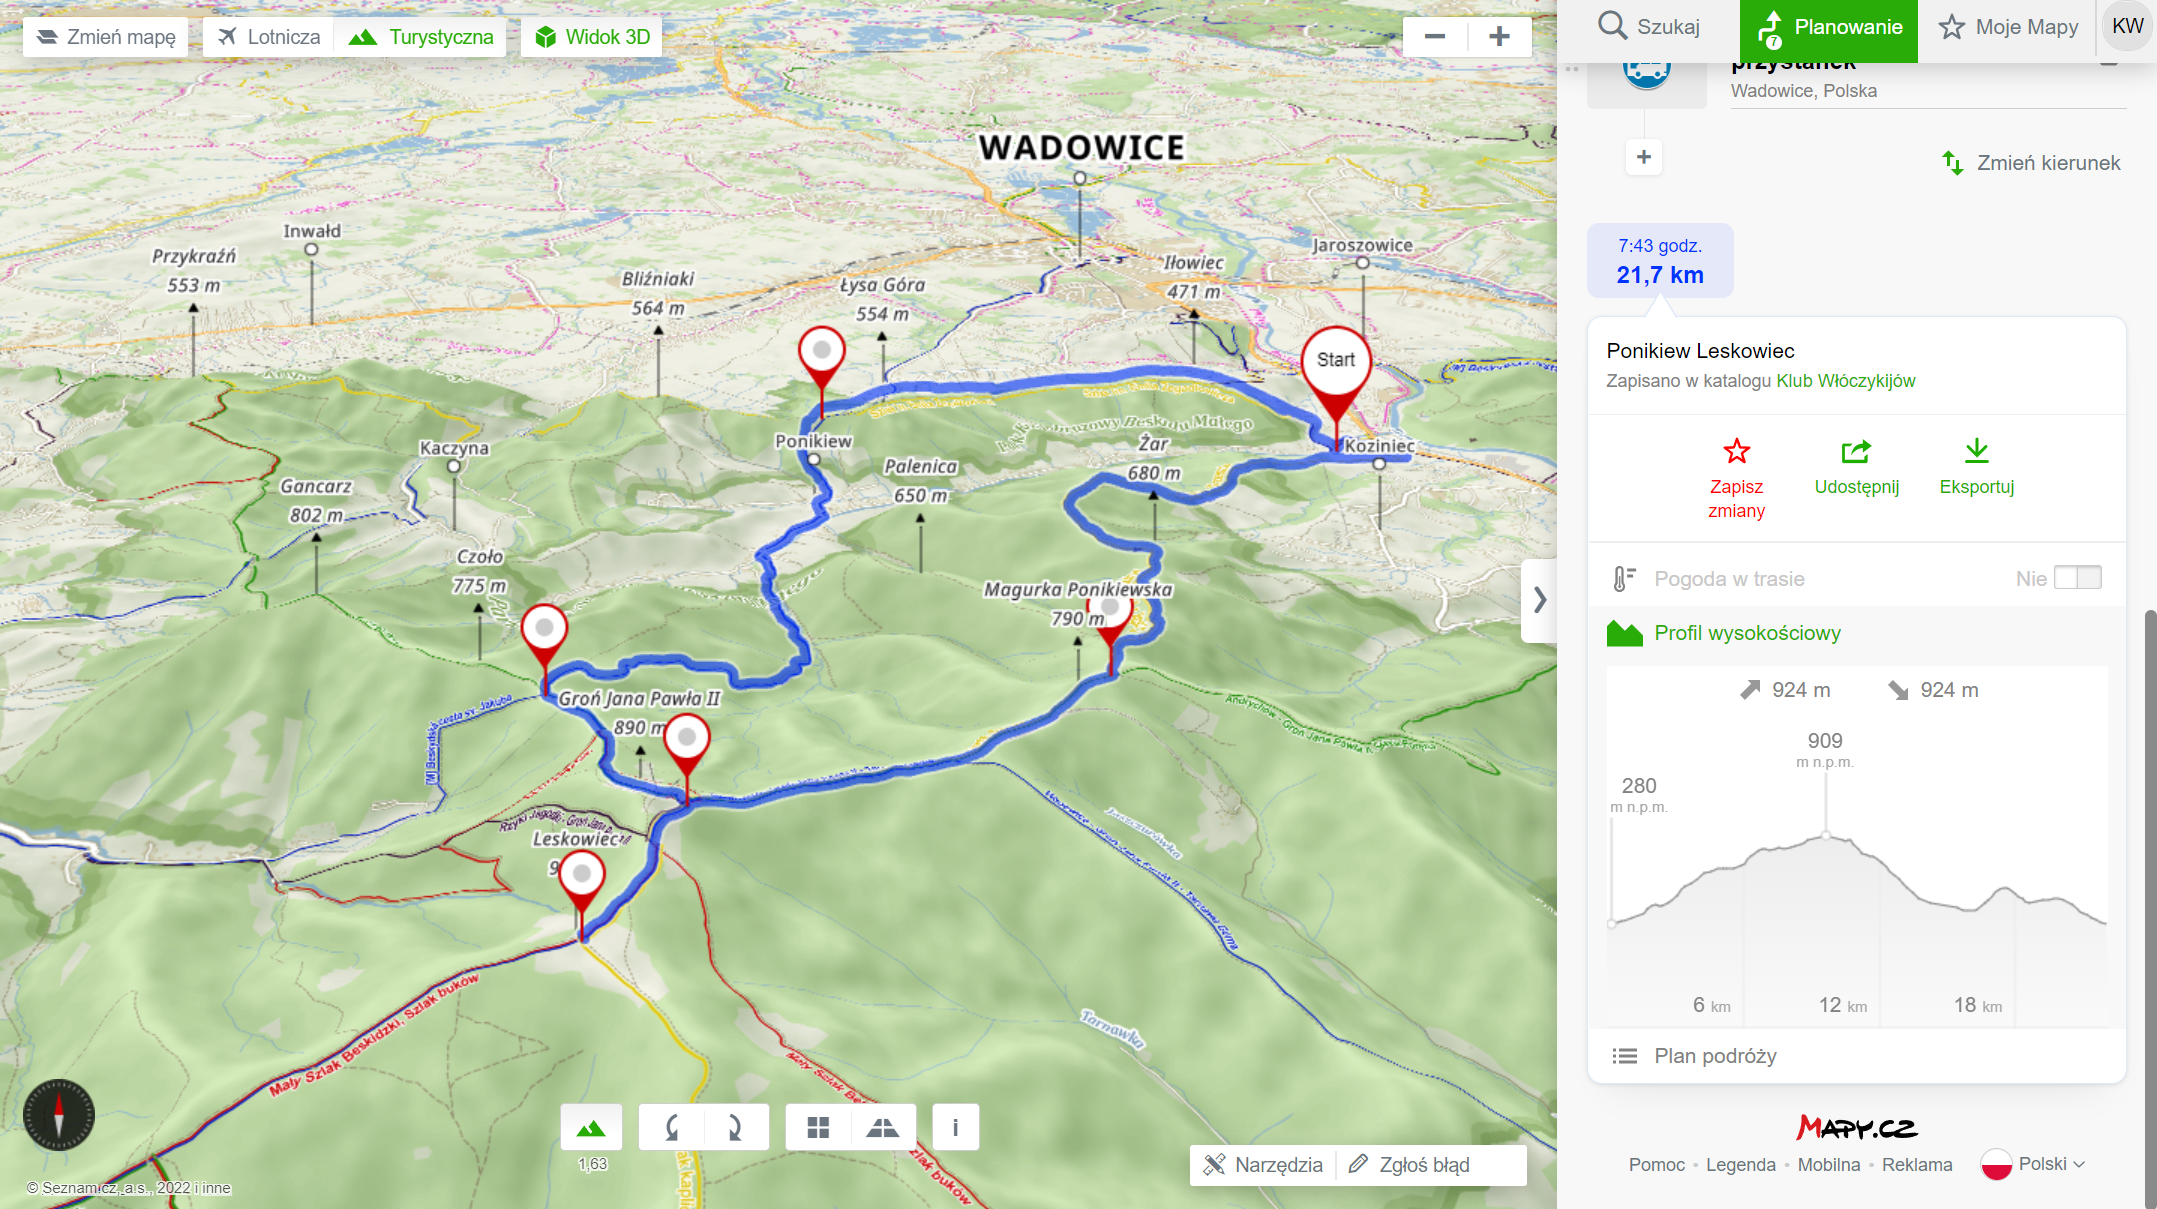 Trasa wycieczki (mapy.cz) - 21,7km, 924m podejść